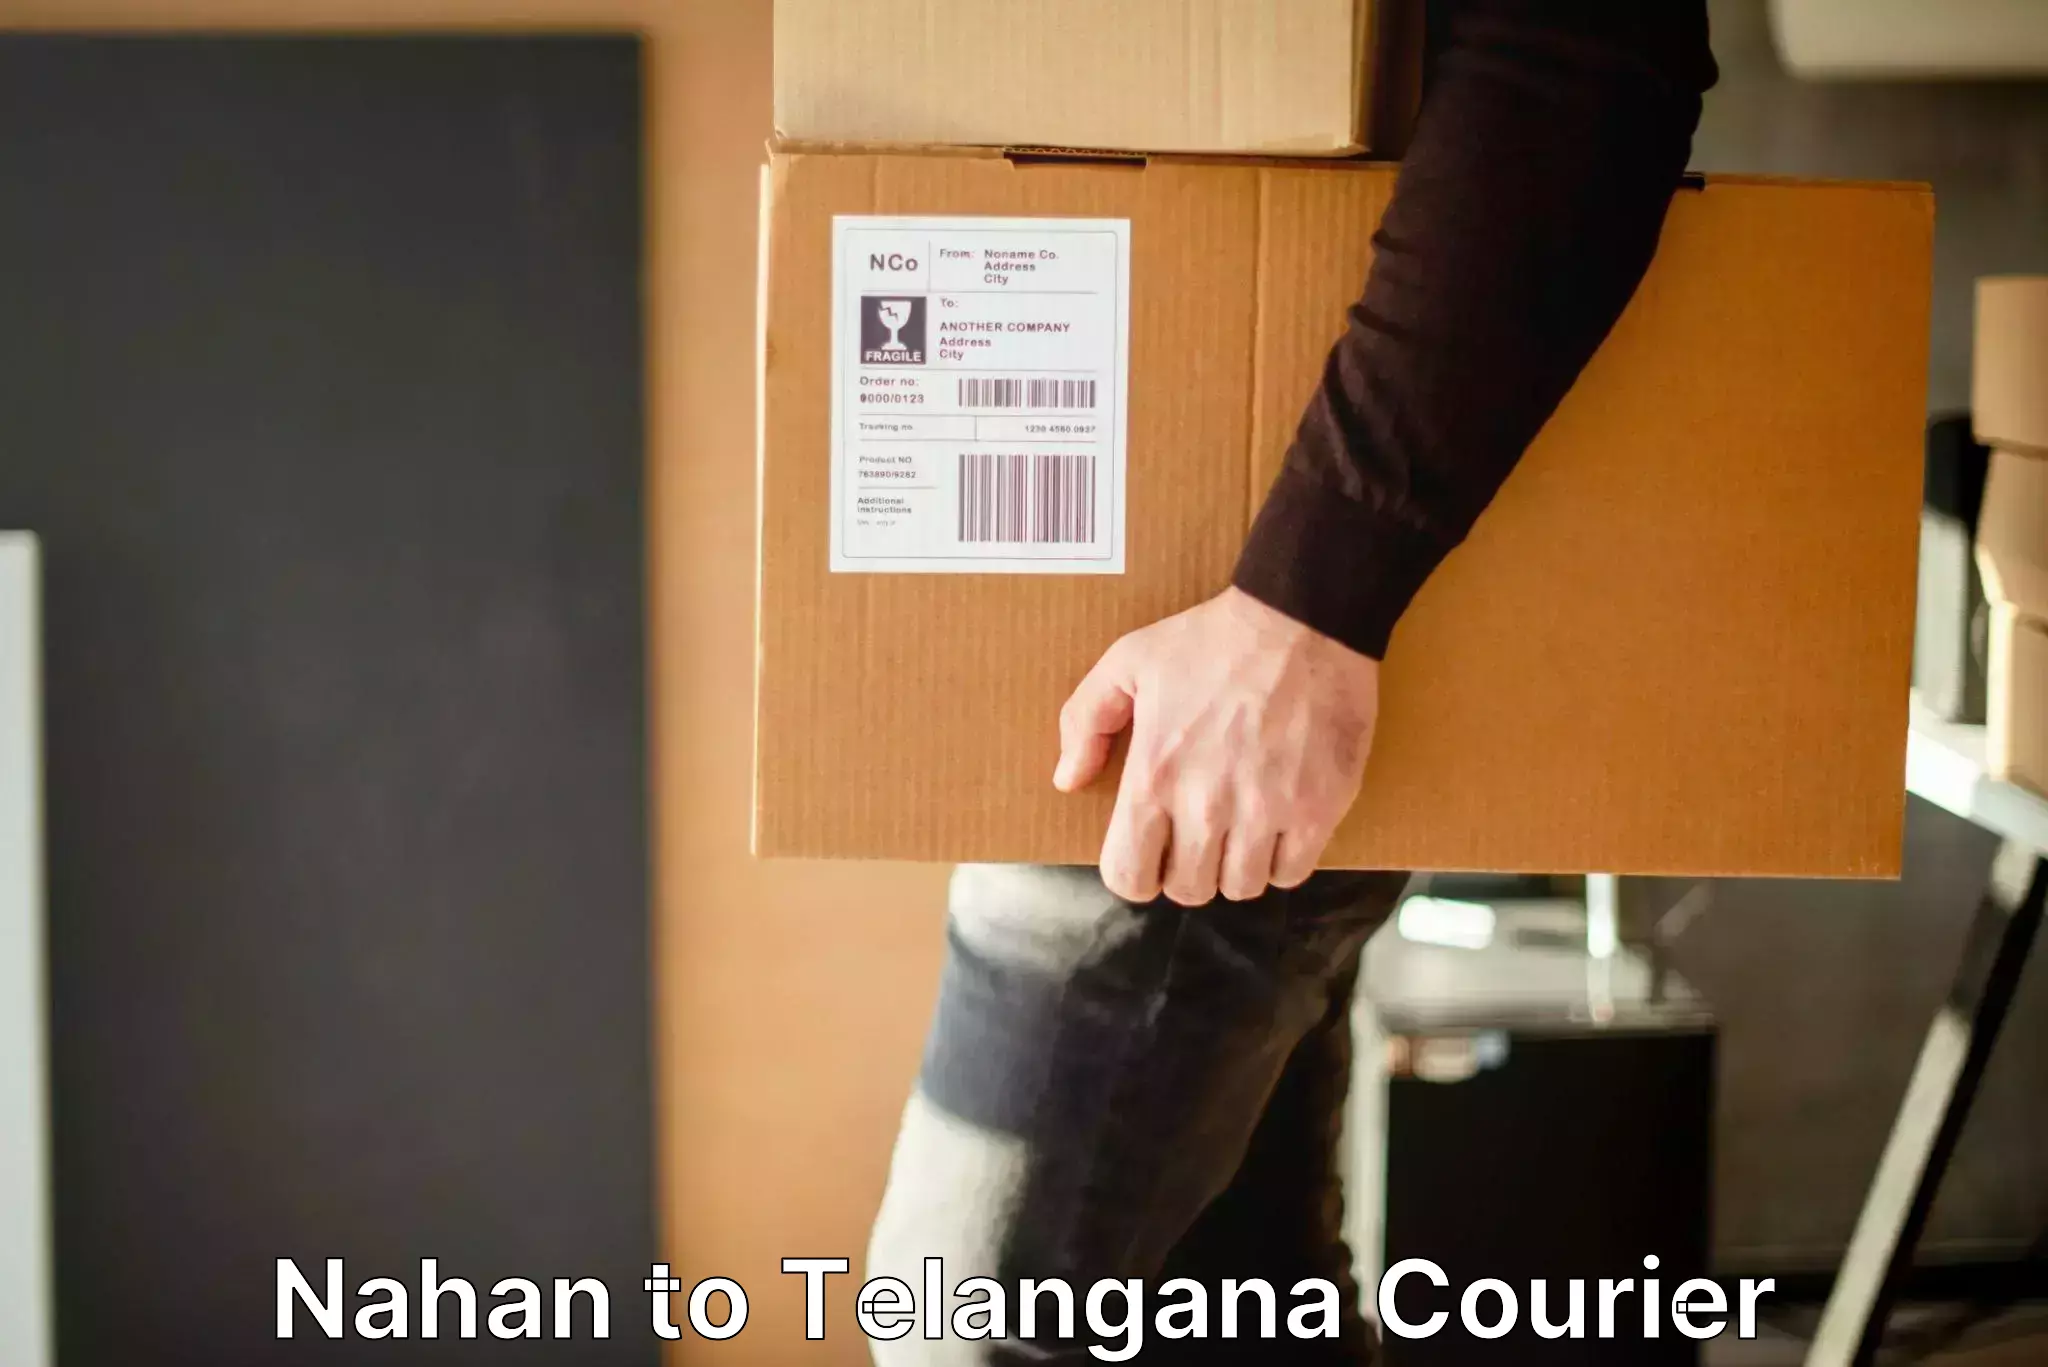 Luggage shipment tracking Nahan to Dahegaon